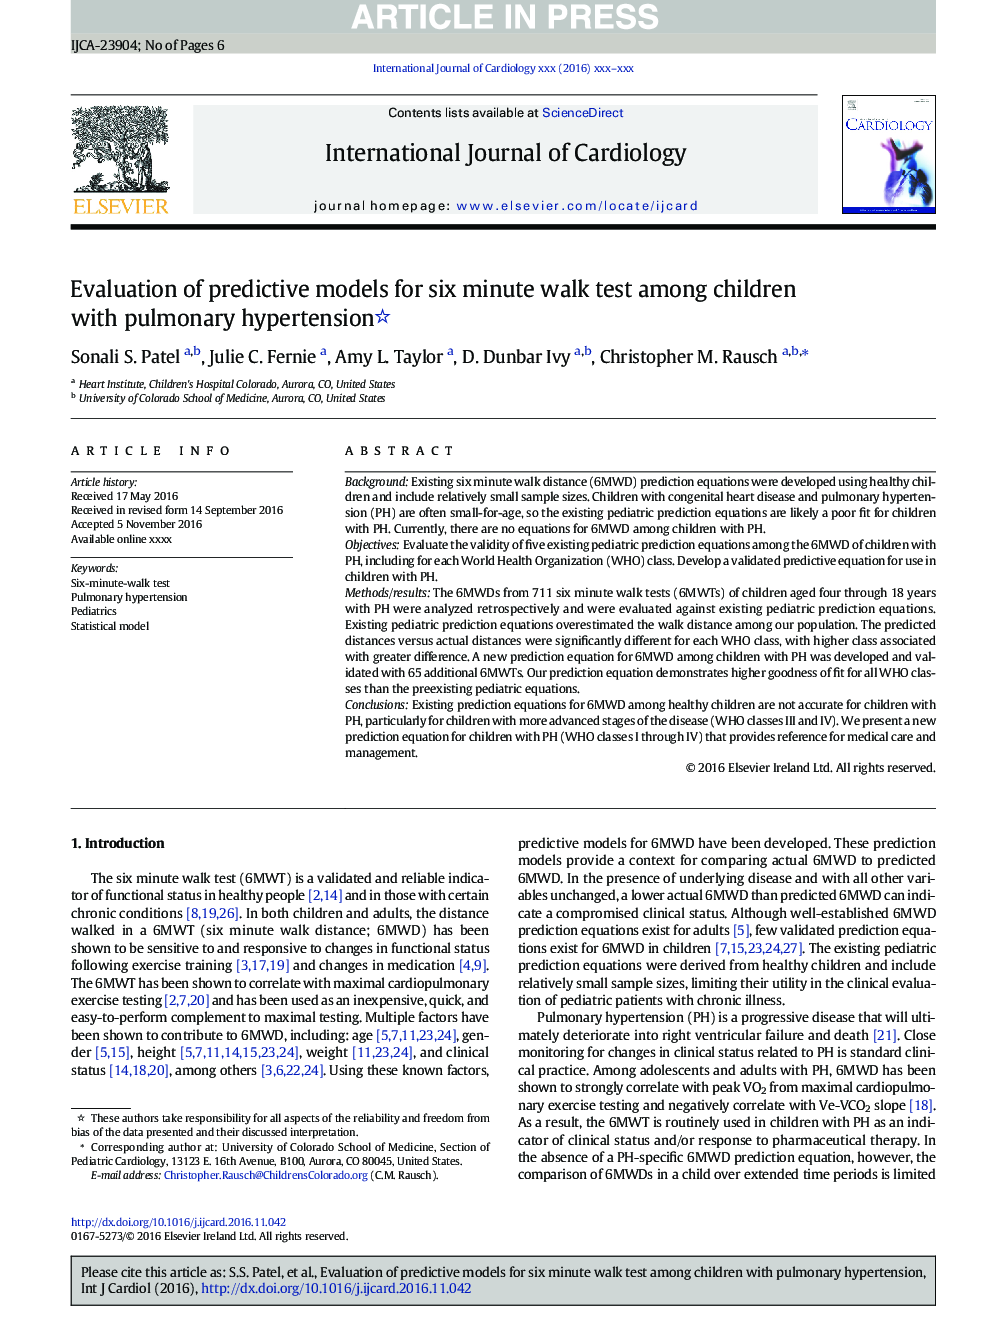 بررسی مدل های پیش بینی شده برای آزمون شش دقیقه ای در کودکان مبتلا به پرفشاری خون ریوی 